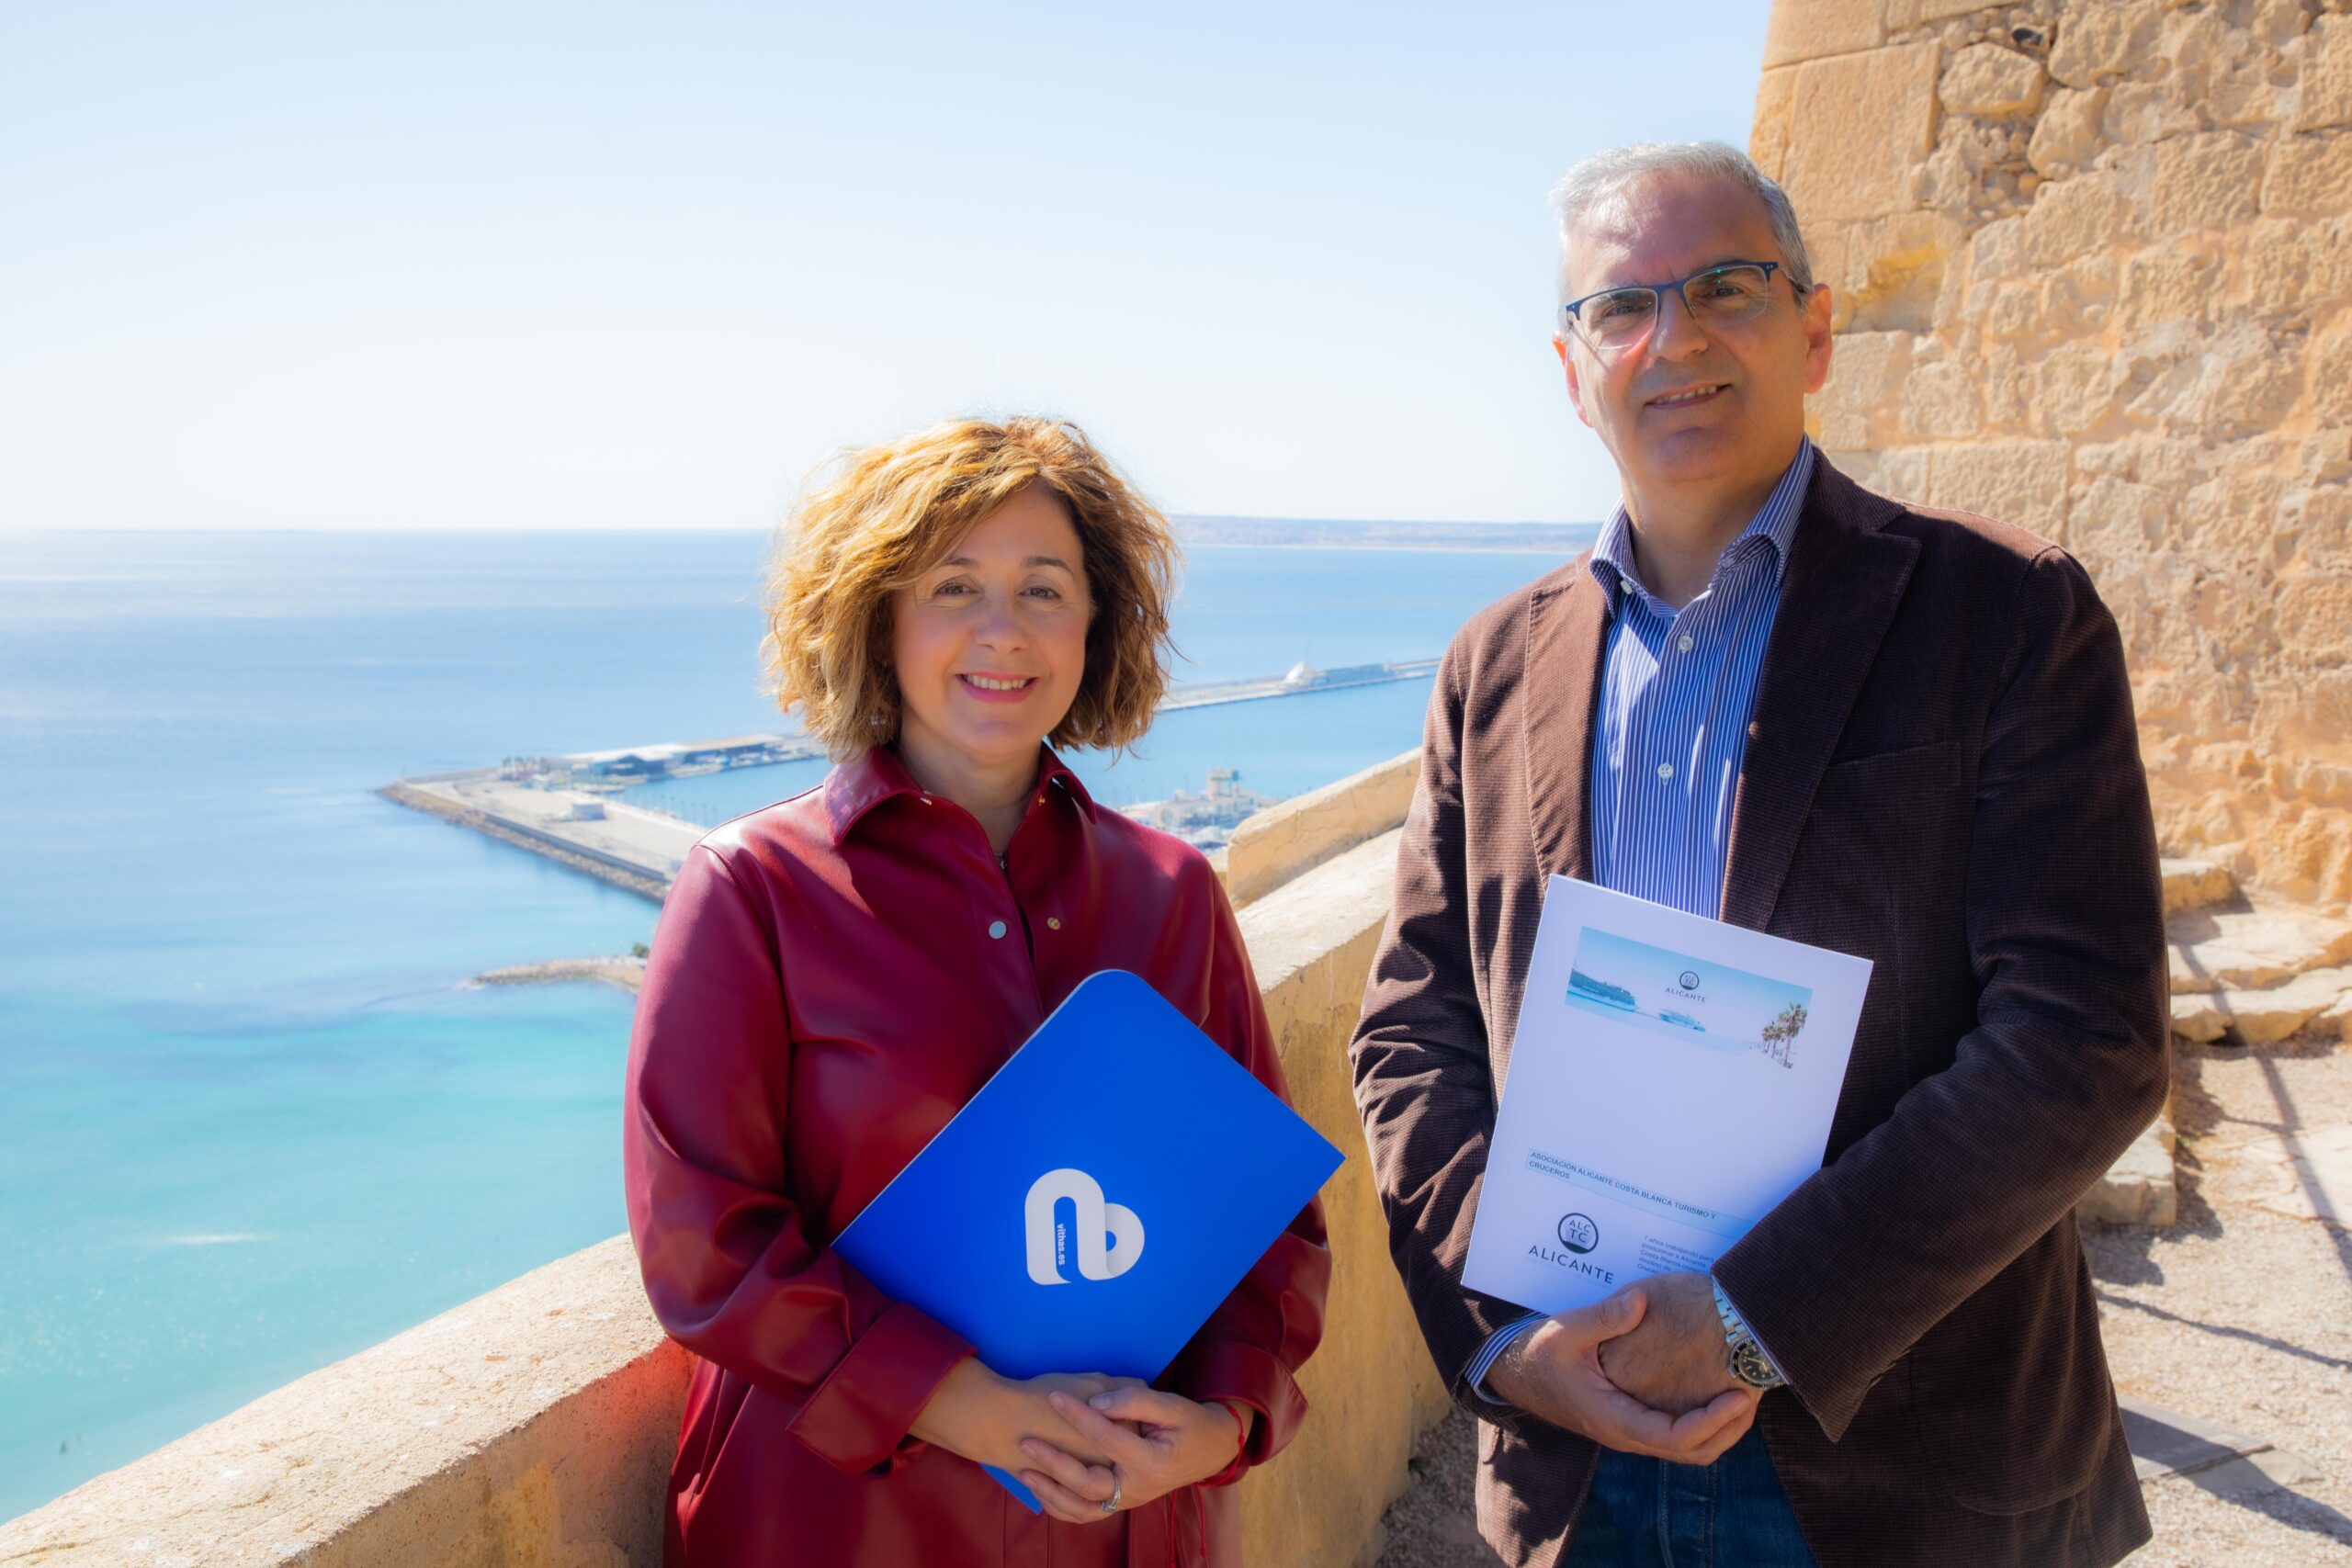 Los hospitales Vithas de Alicante y la Asociación Alicante Cruceros establecen una colaboración estratégica para mejorar la atención médica a turistas